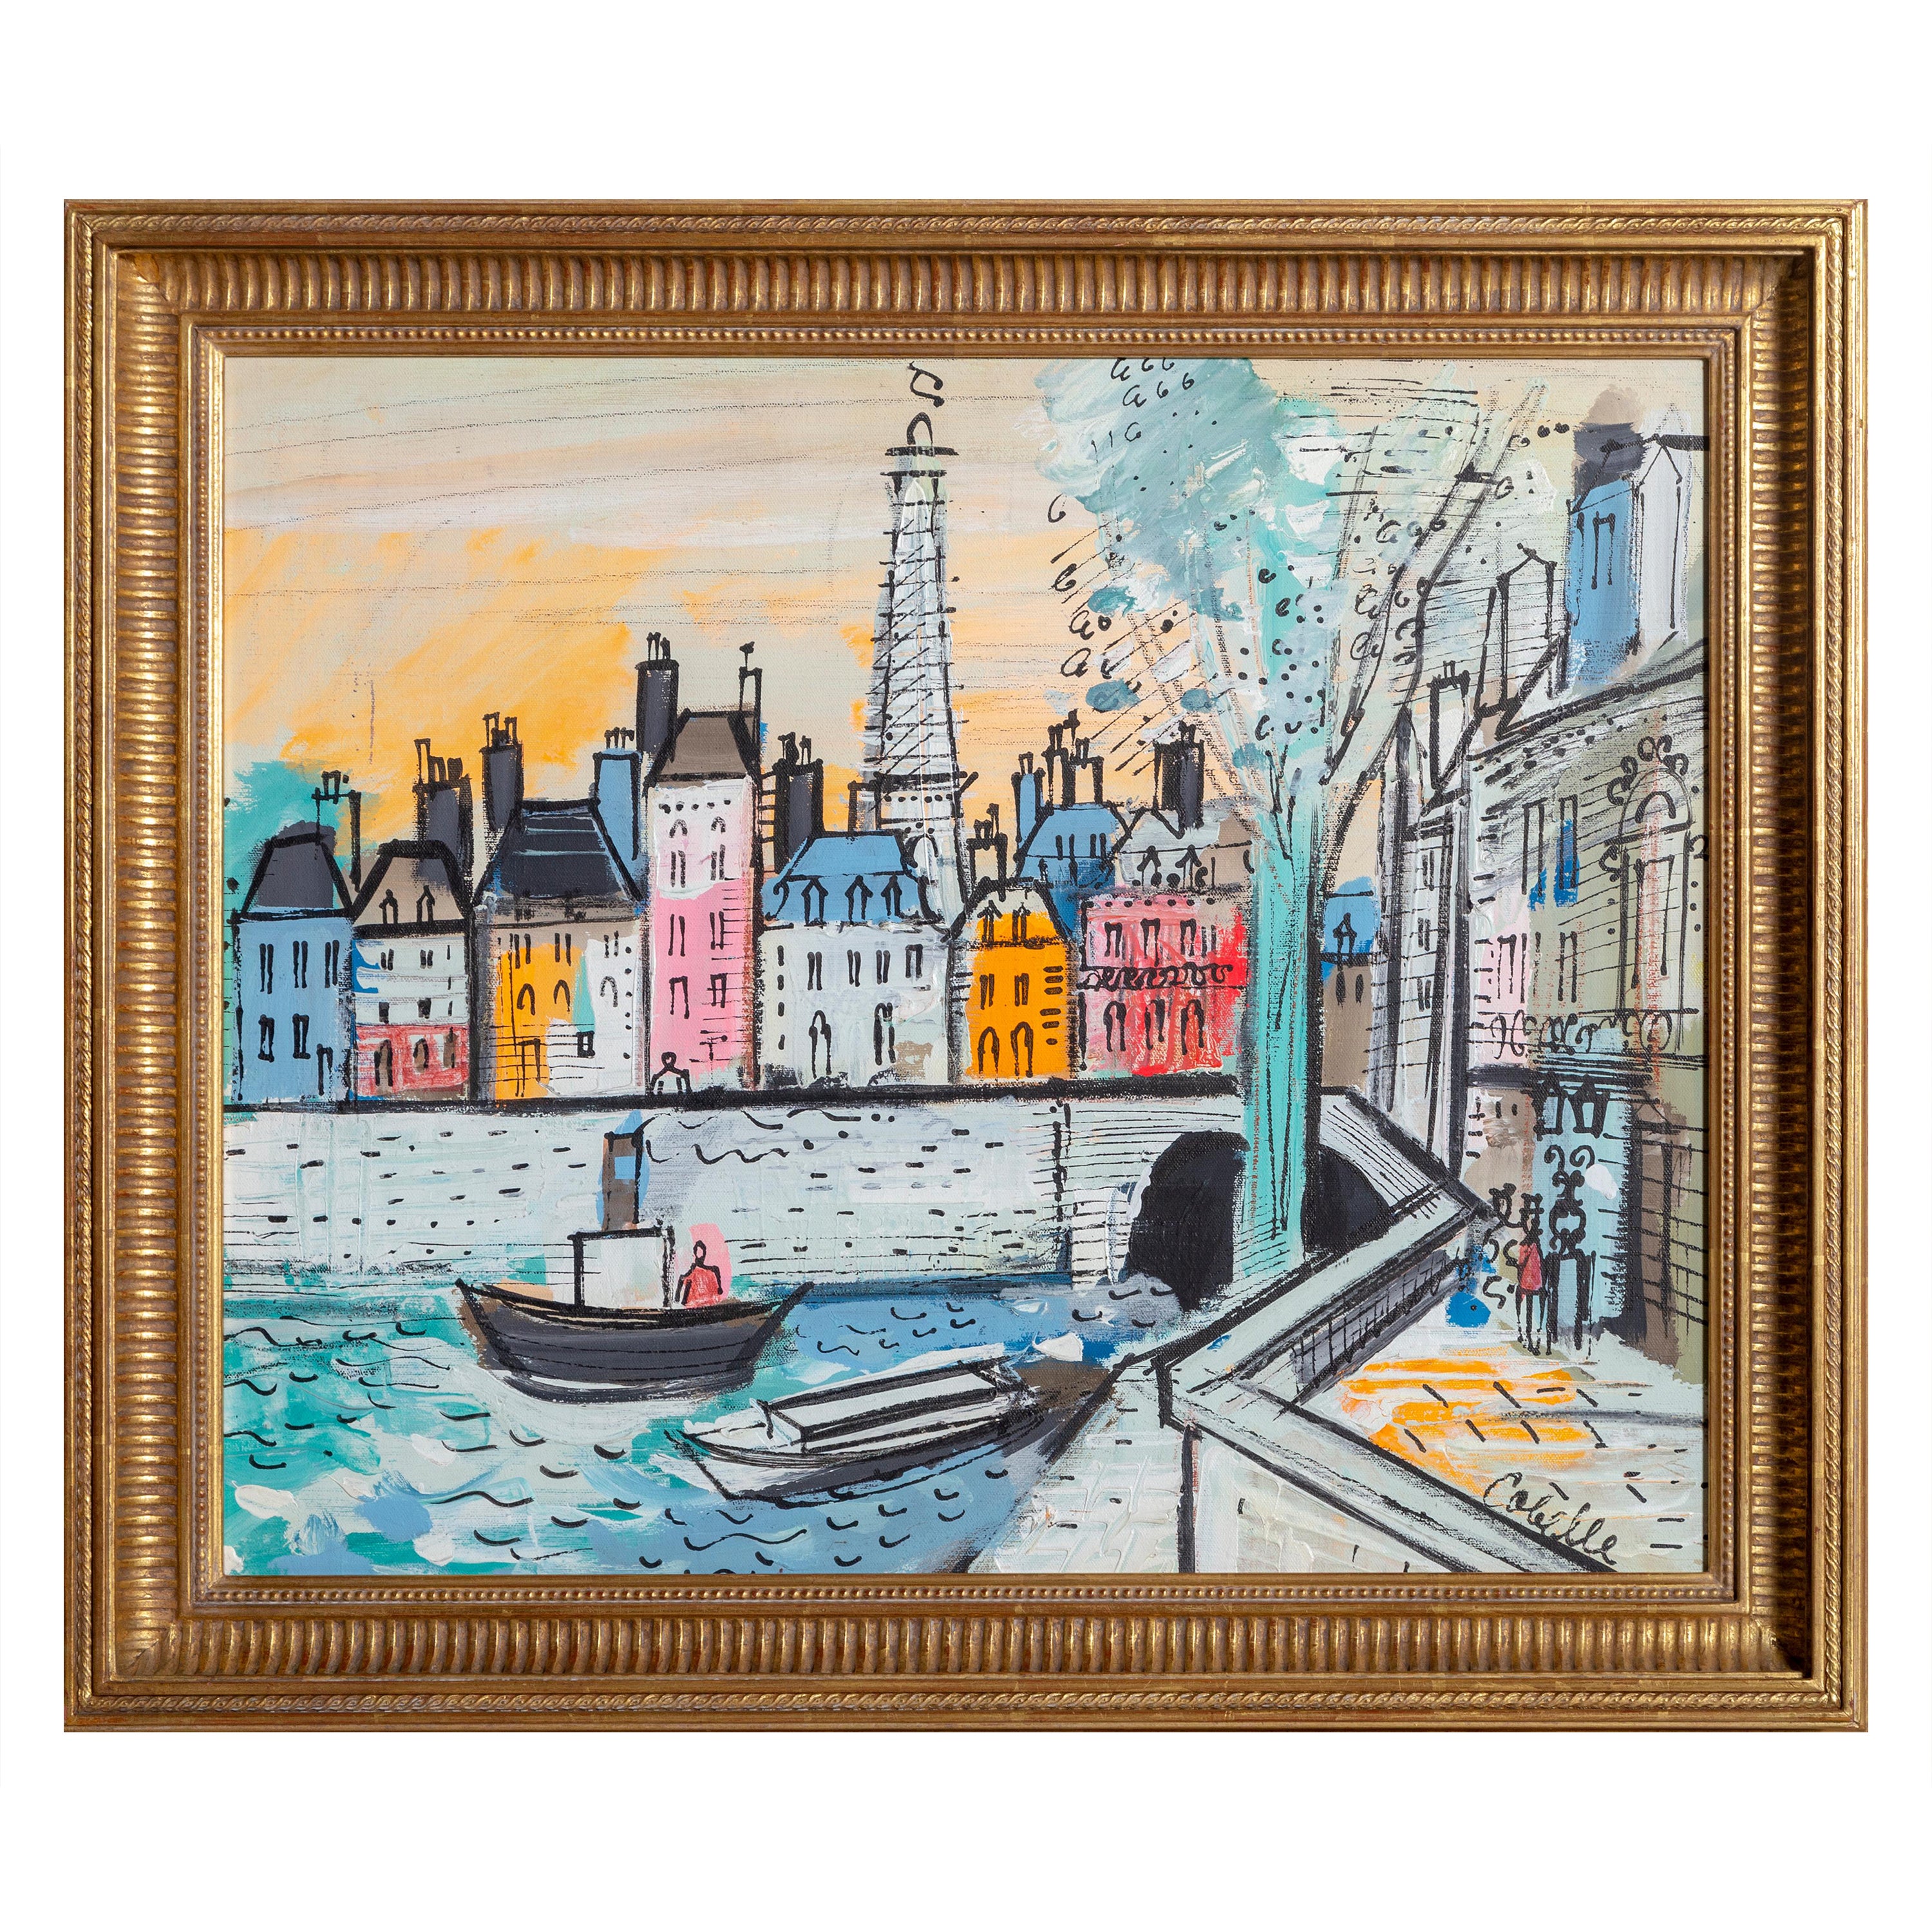 Une peinture idyllique de la Seine animée à Paris, par l'artiste français Charles Cobelle. Cobelle était un artiste français accompli qui a étudié avec Marc Chagall et Raoul Dufy. Utilisant les compétences qu'il a affinées lors de son apprentissage